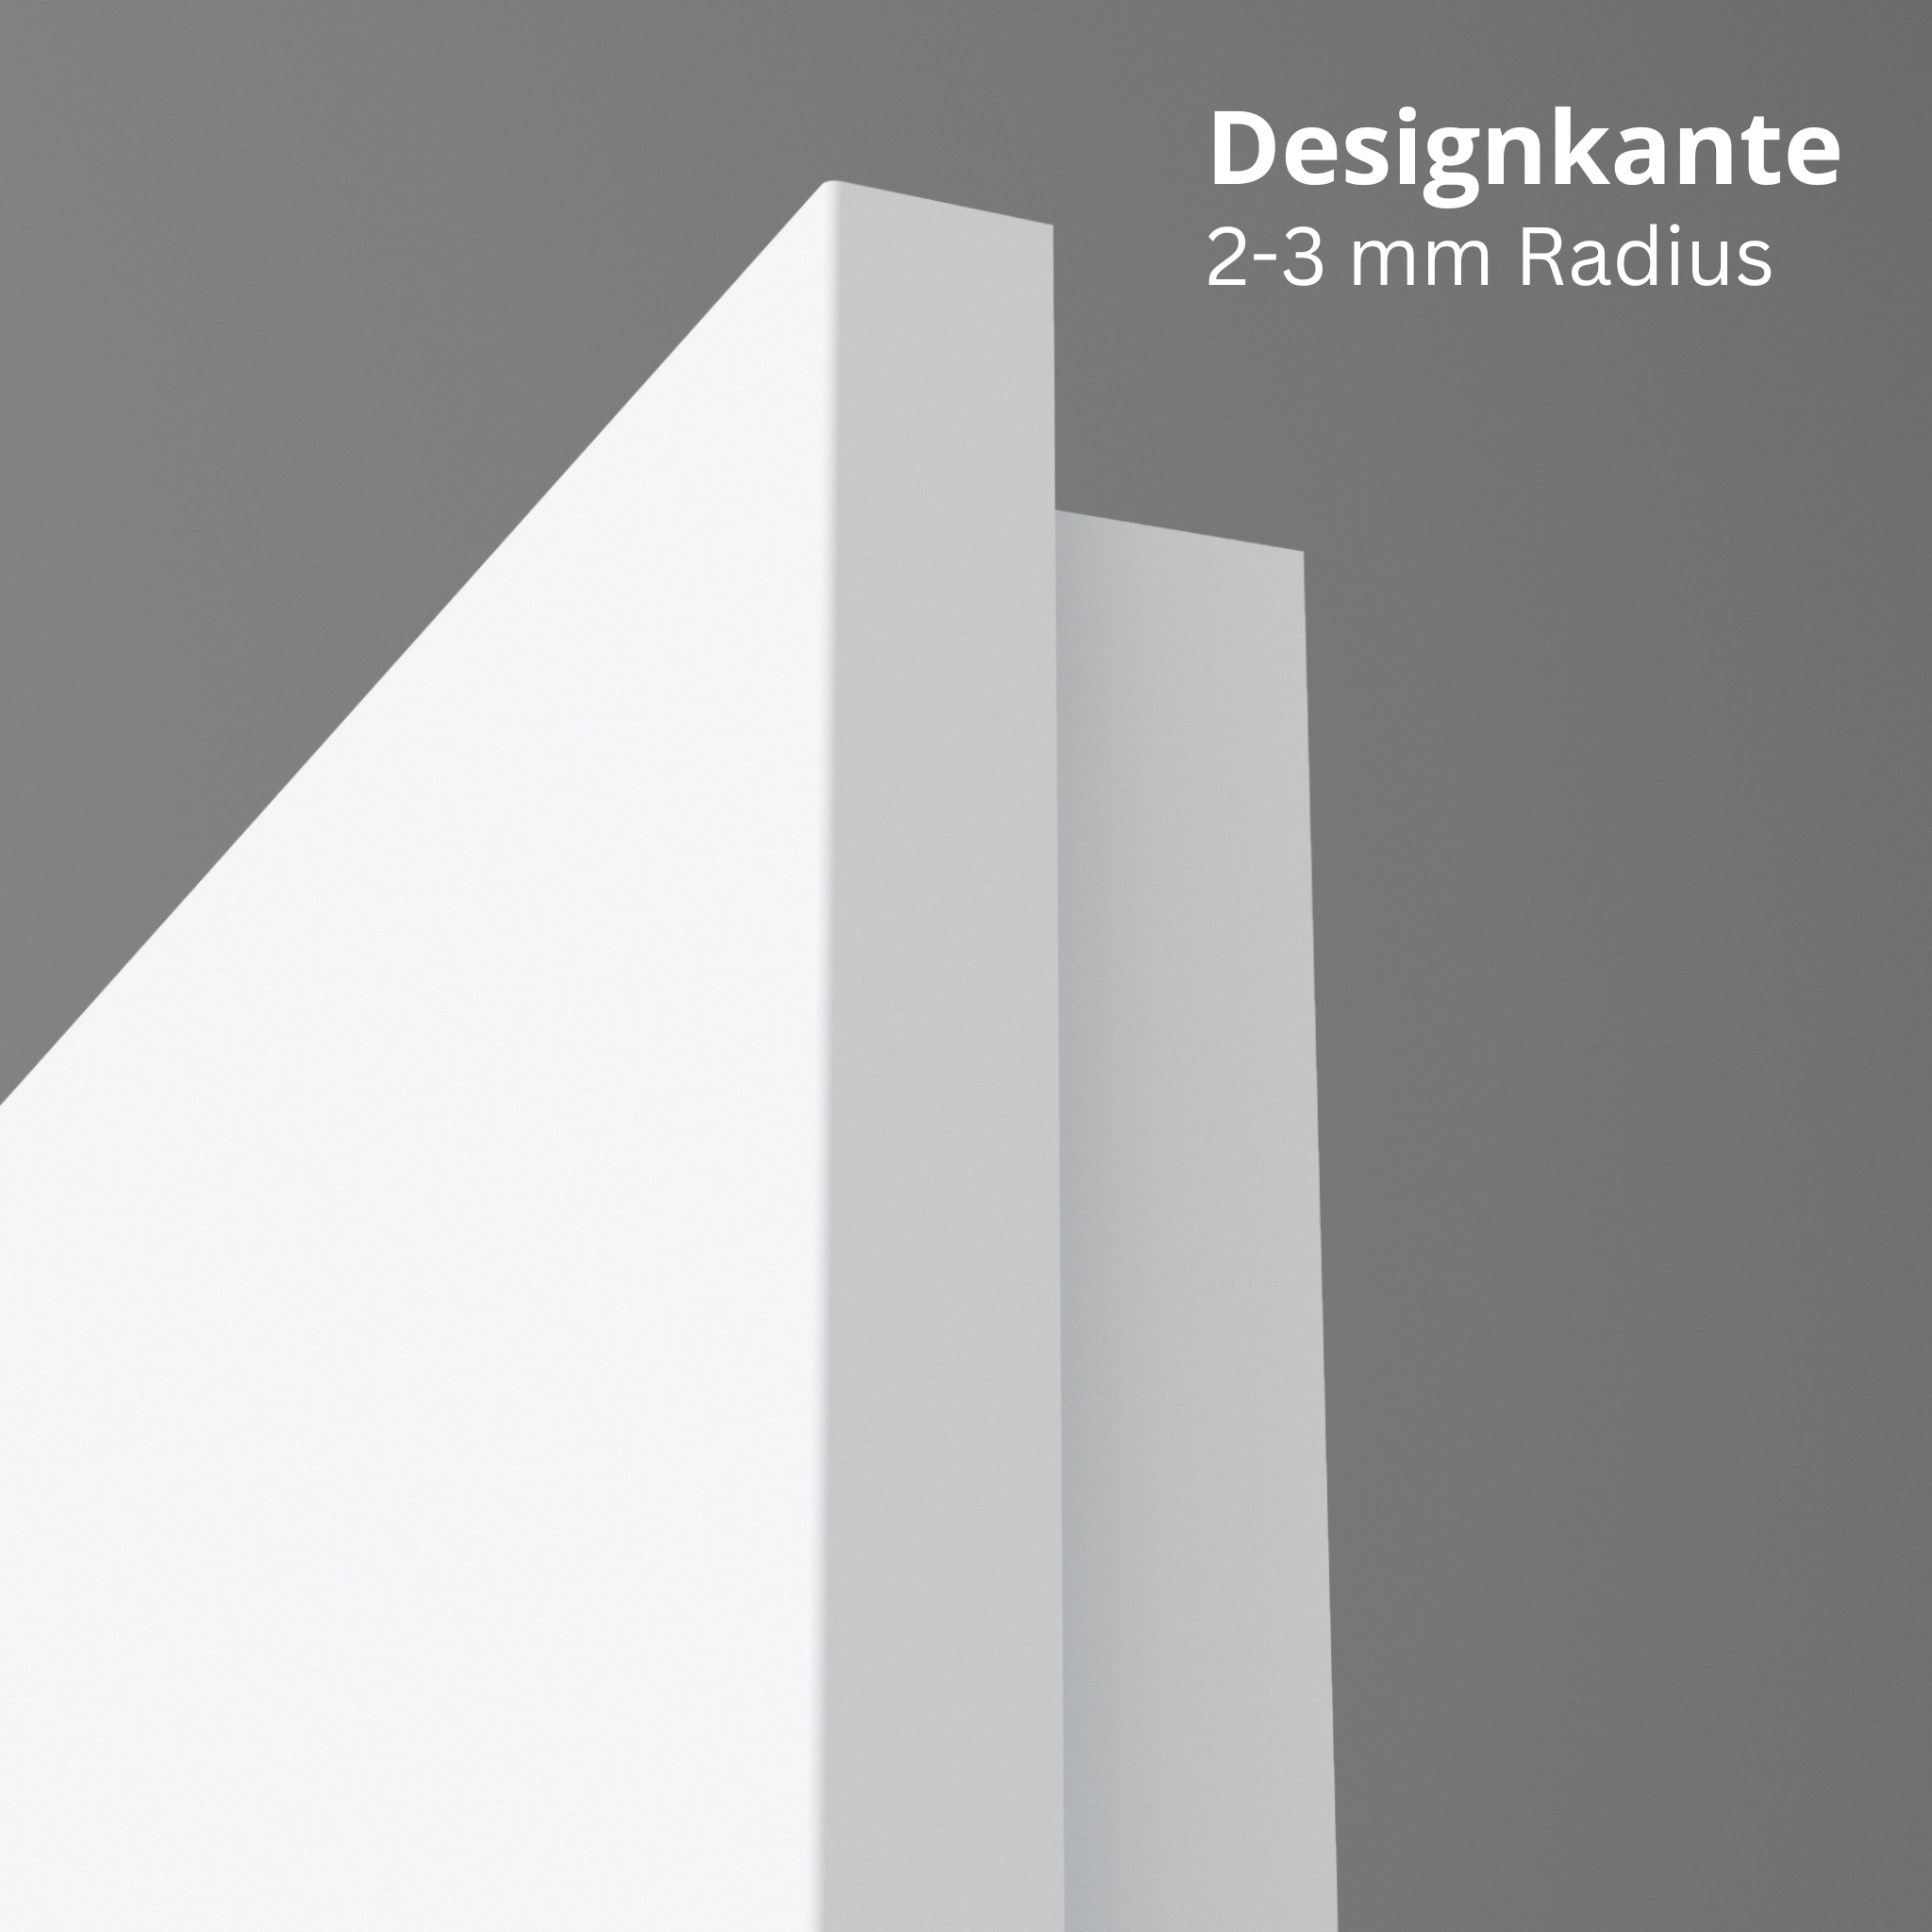 Wohnungseingangstür brillant-weiß Dekor glatt Designkante SK1 / KK3